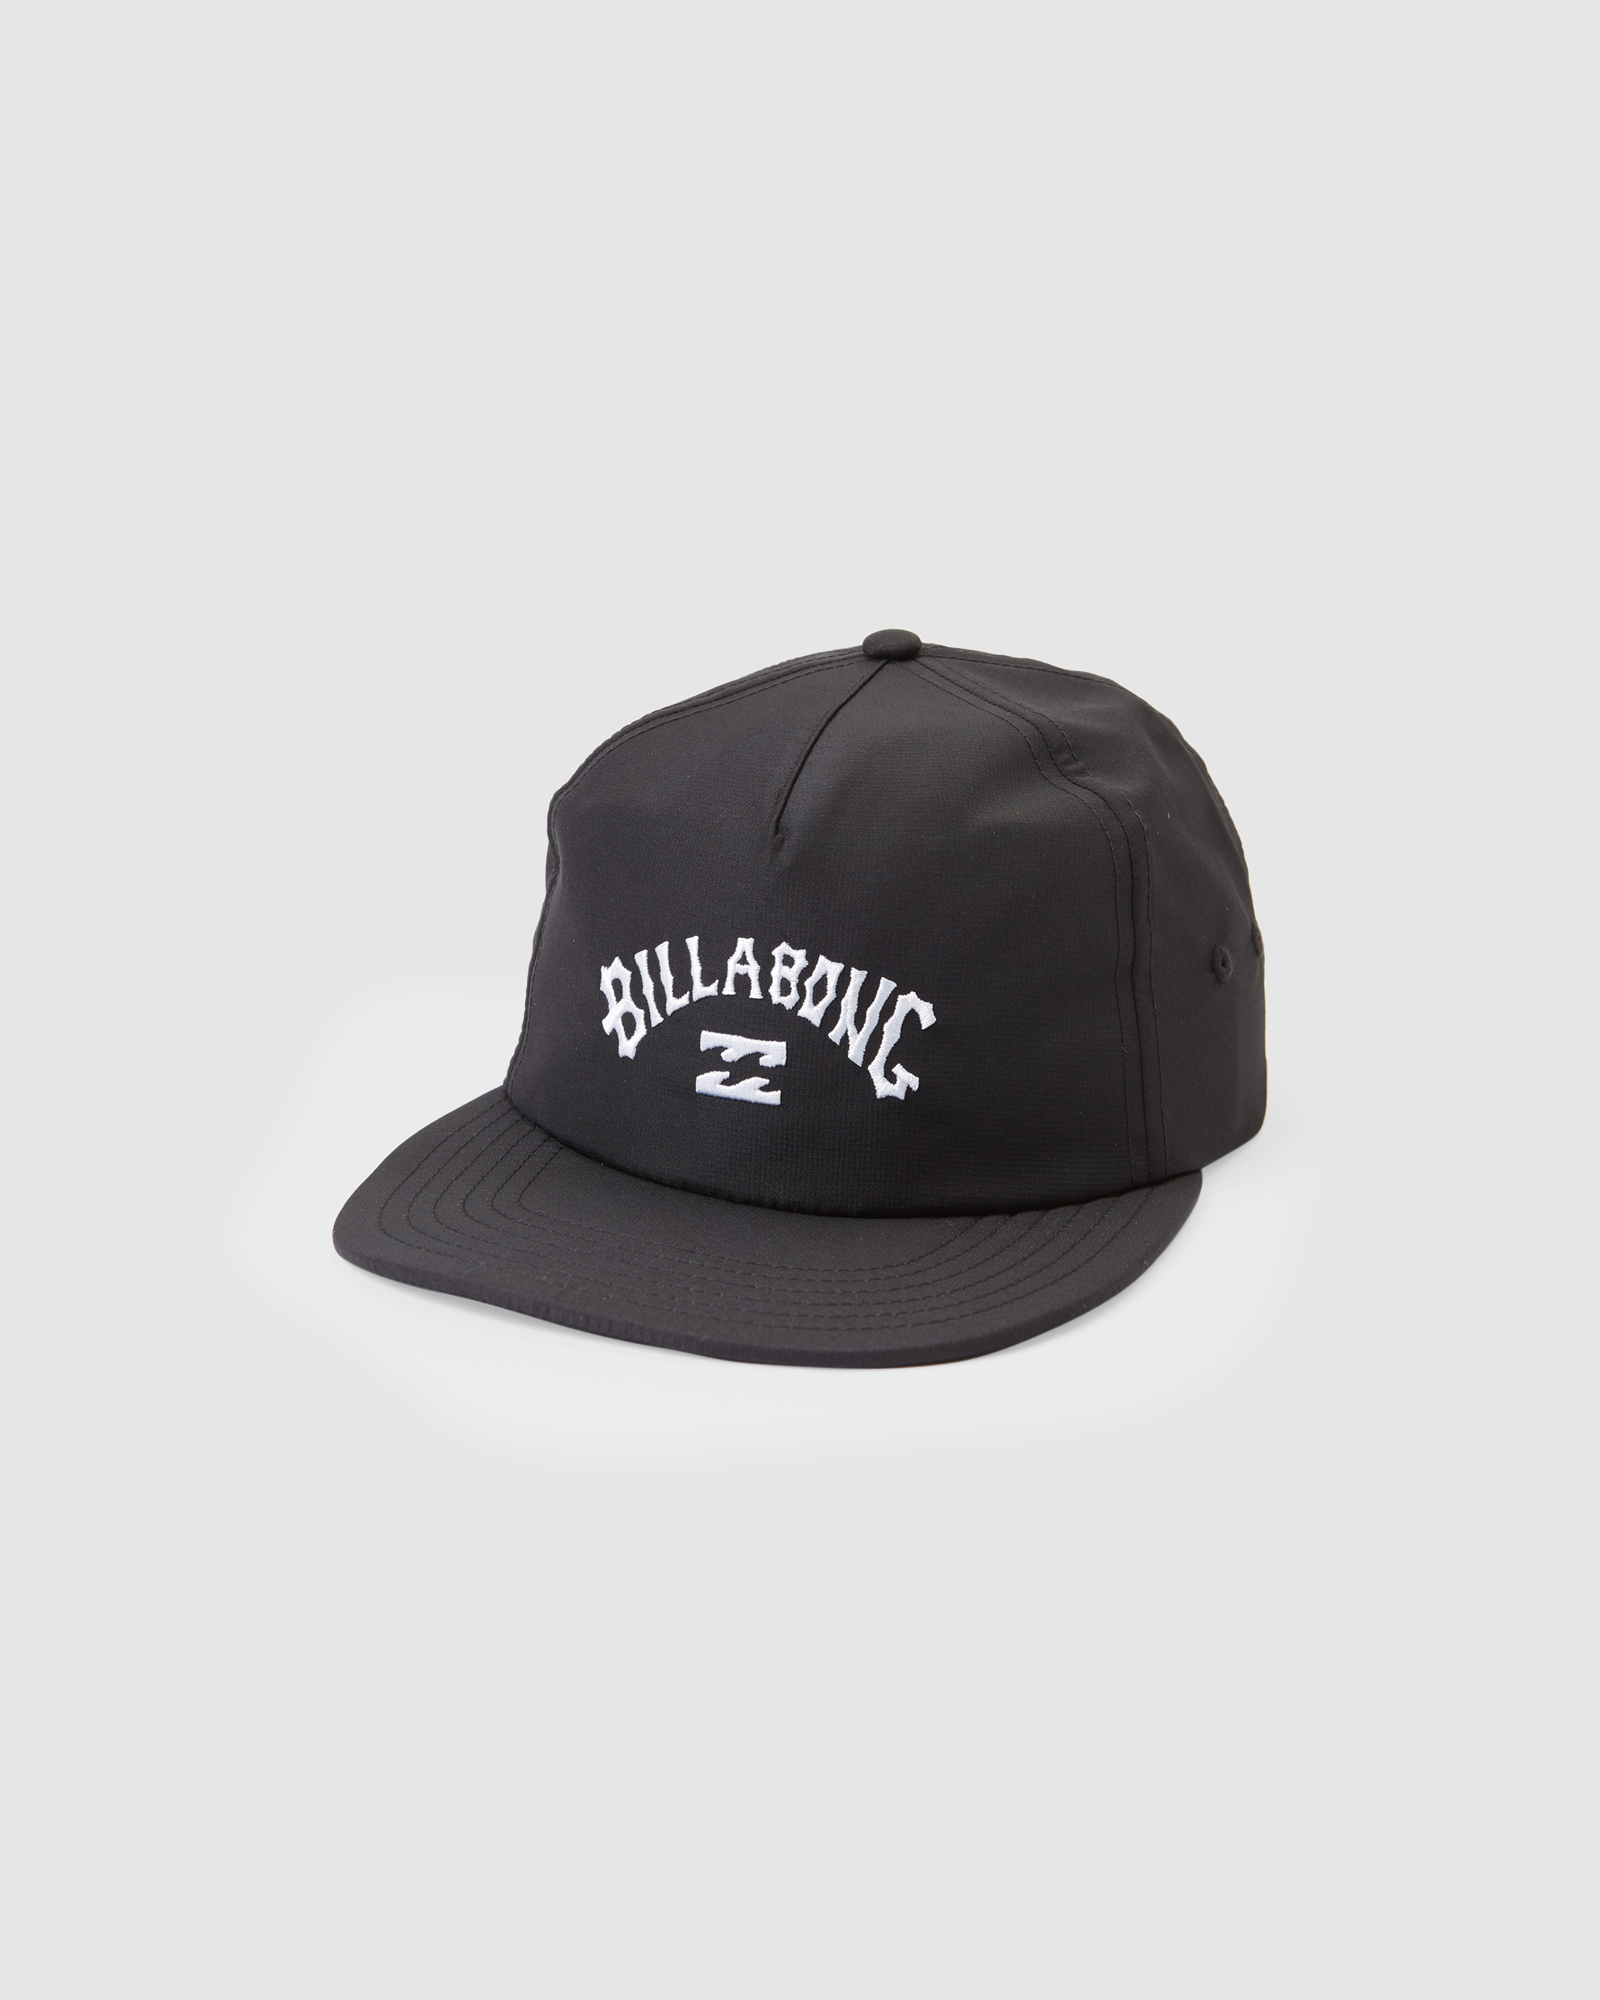 Billabong Arch Team Strapback Hat - Black | SurfStitch